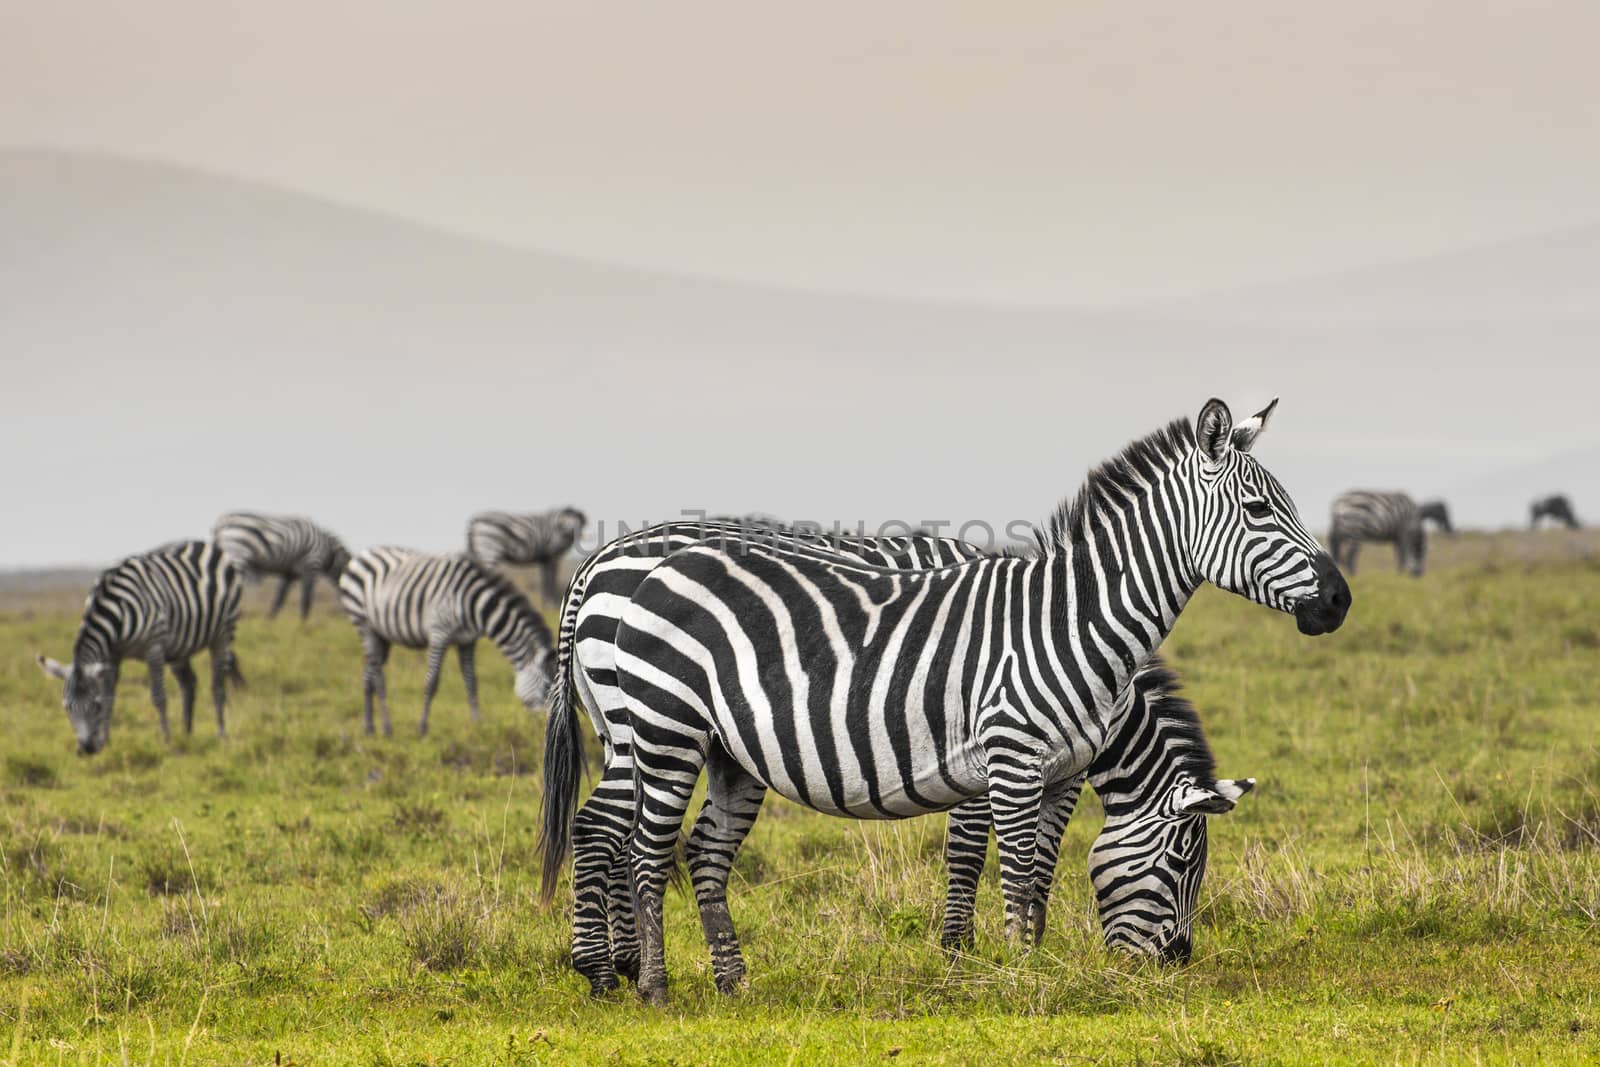 Zebra in National Park. Africa, Kenya by mariusz_prusaczyk